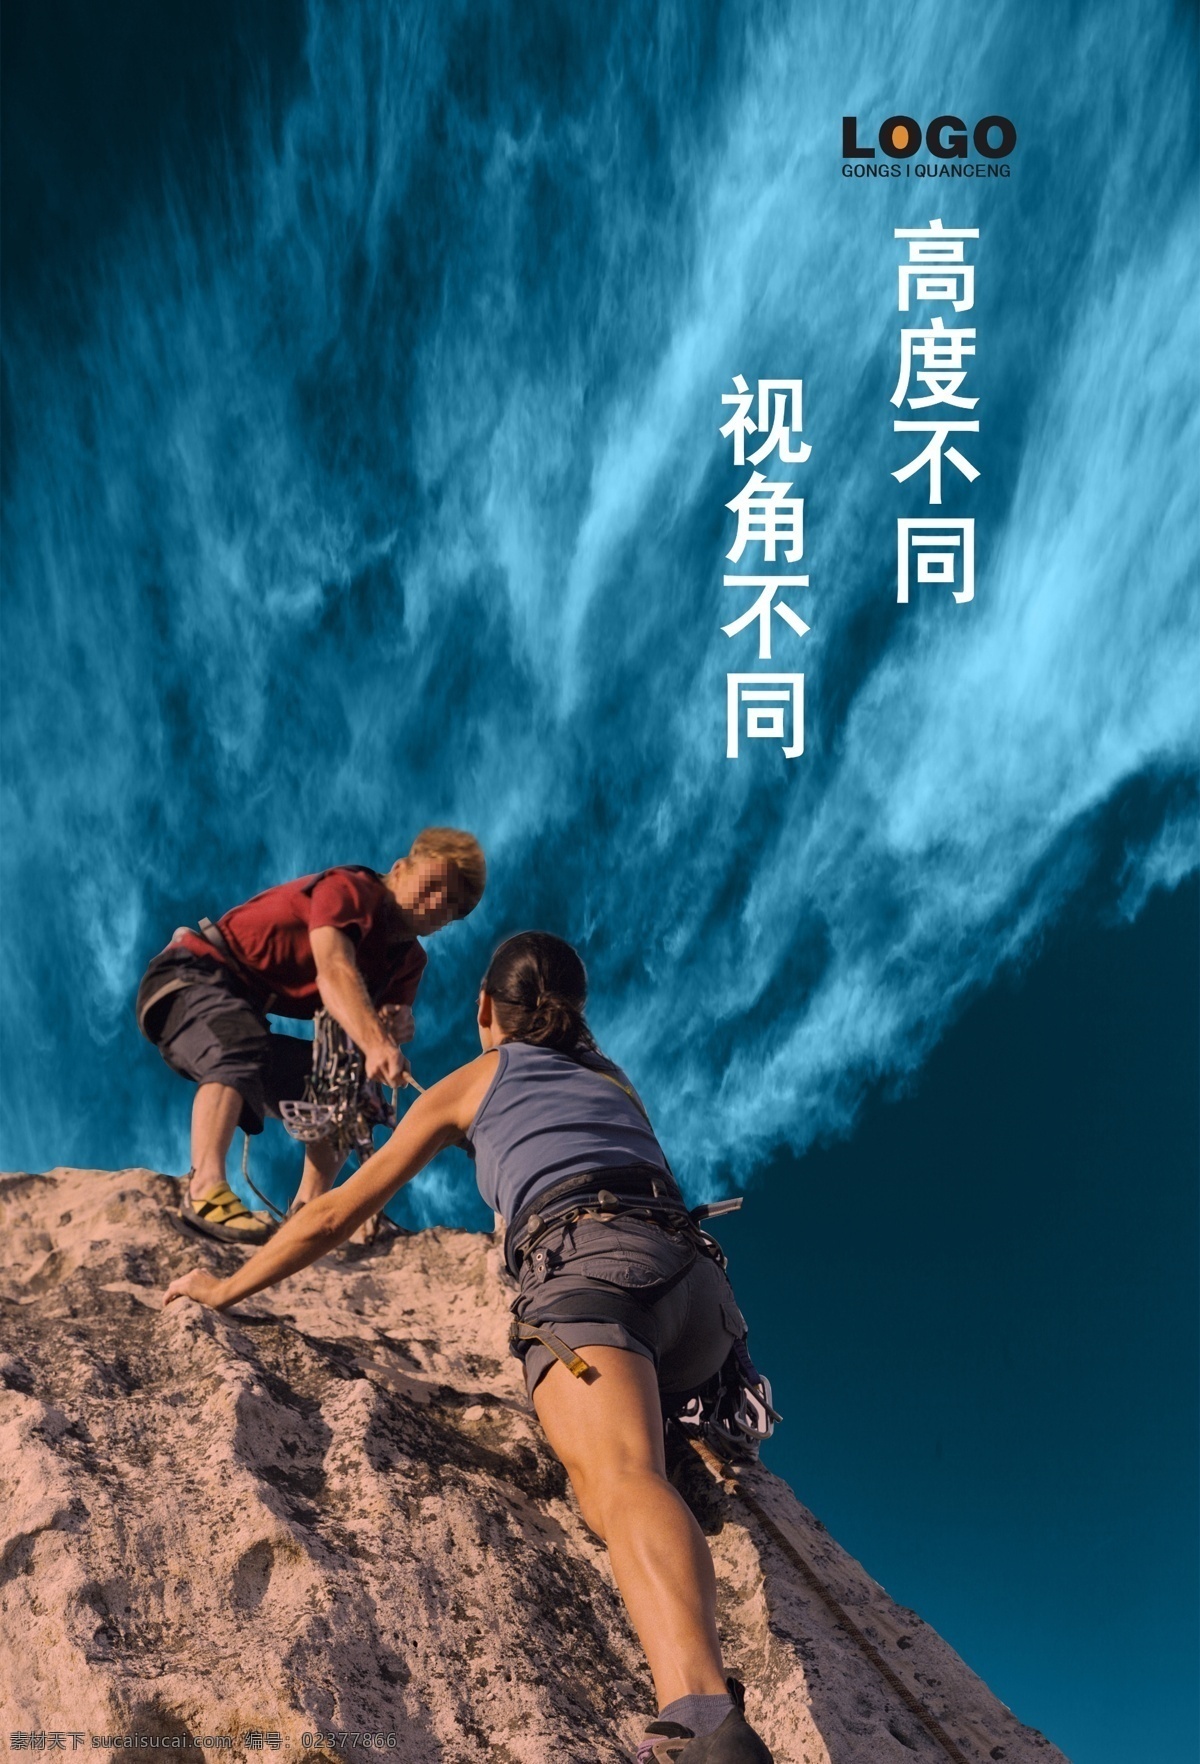 企业形象 商业广告 登山 攀岩 协助 合作 互助 岩石 云 广告设计模板 源文件